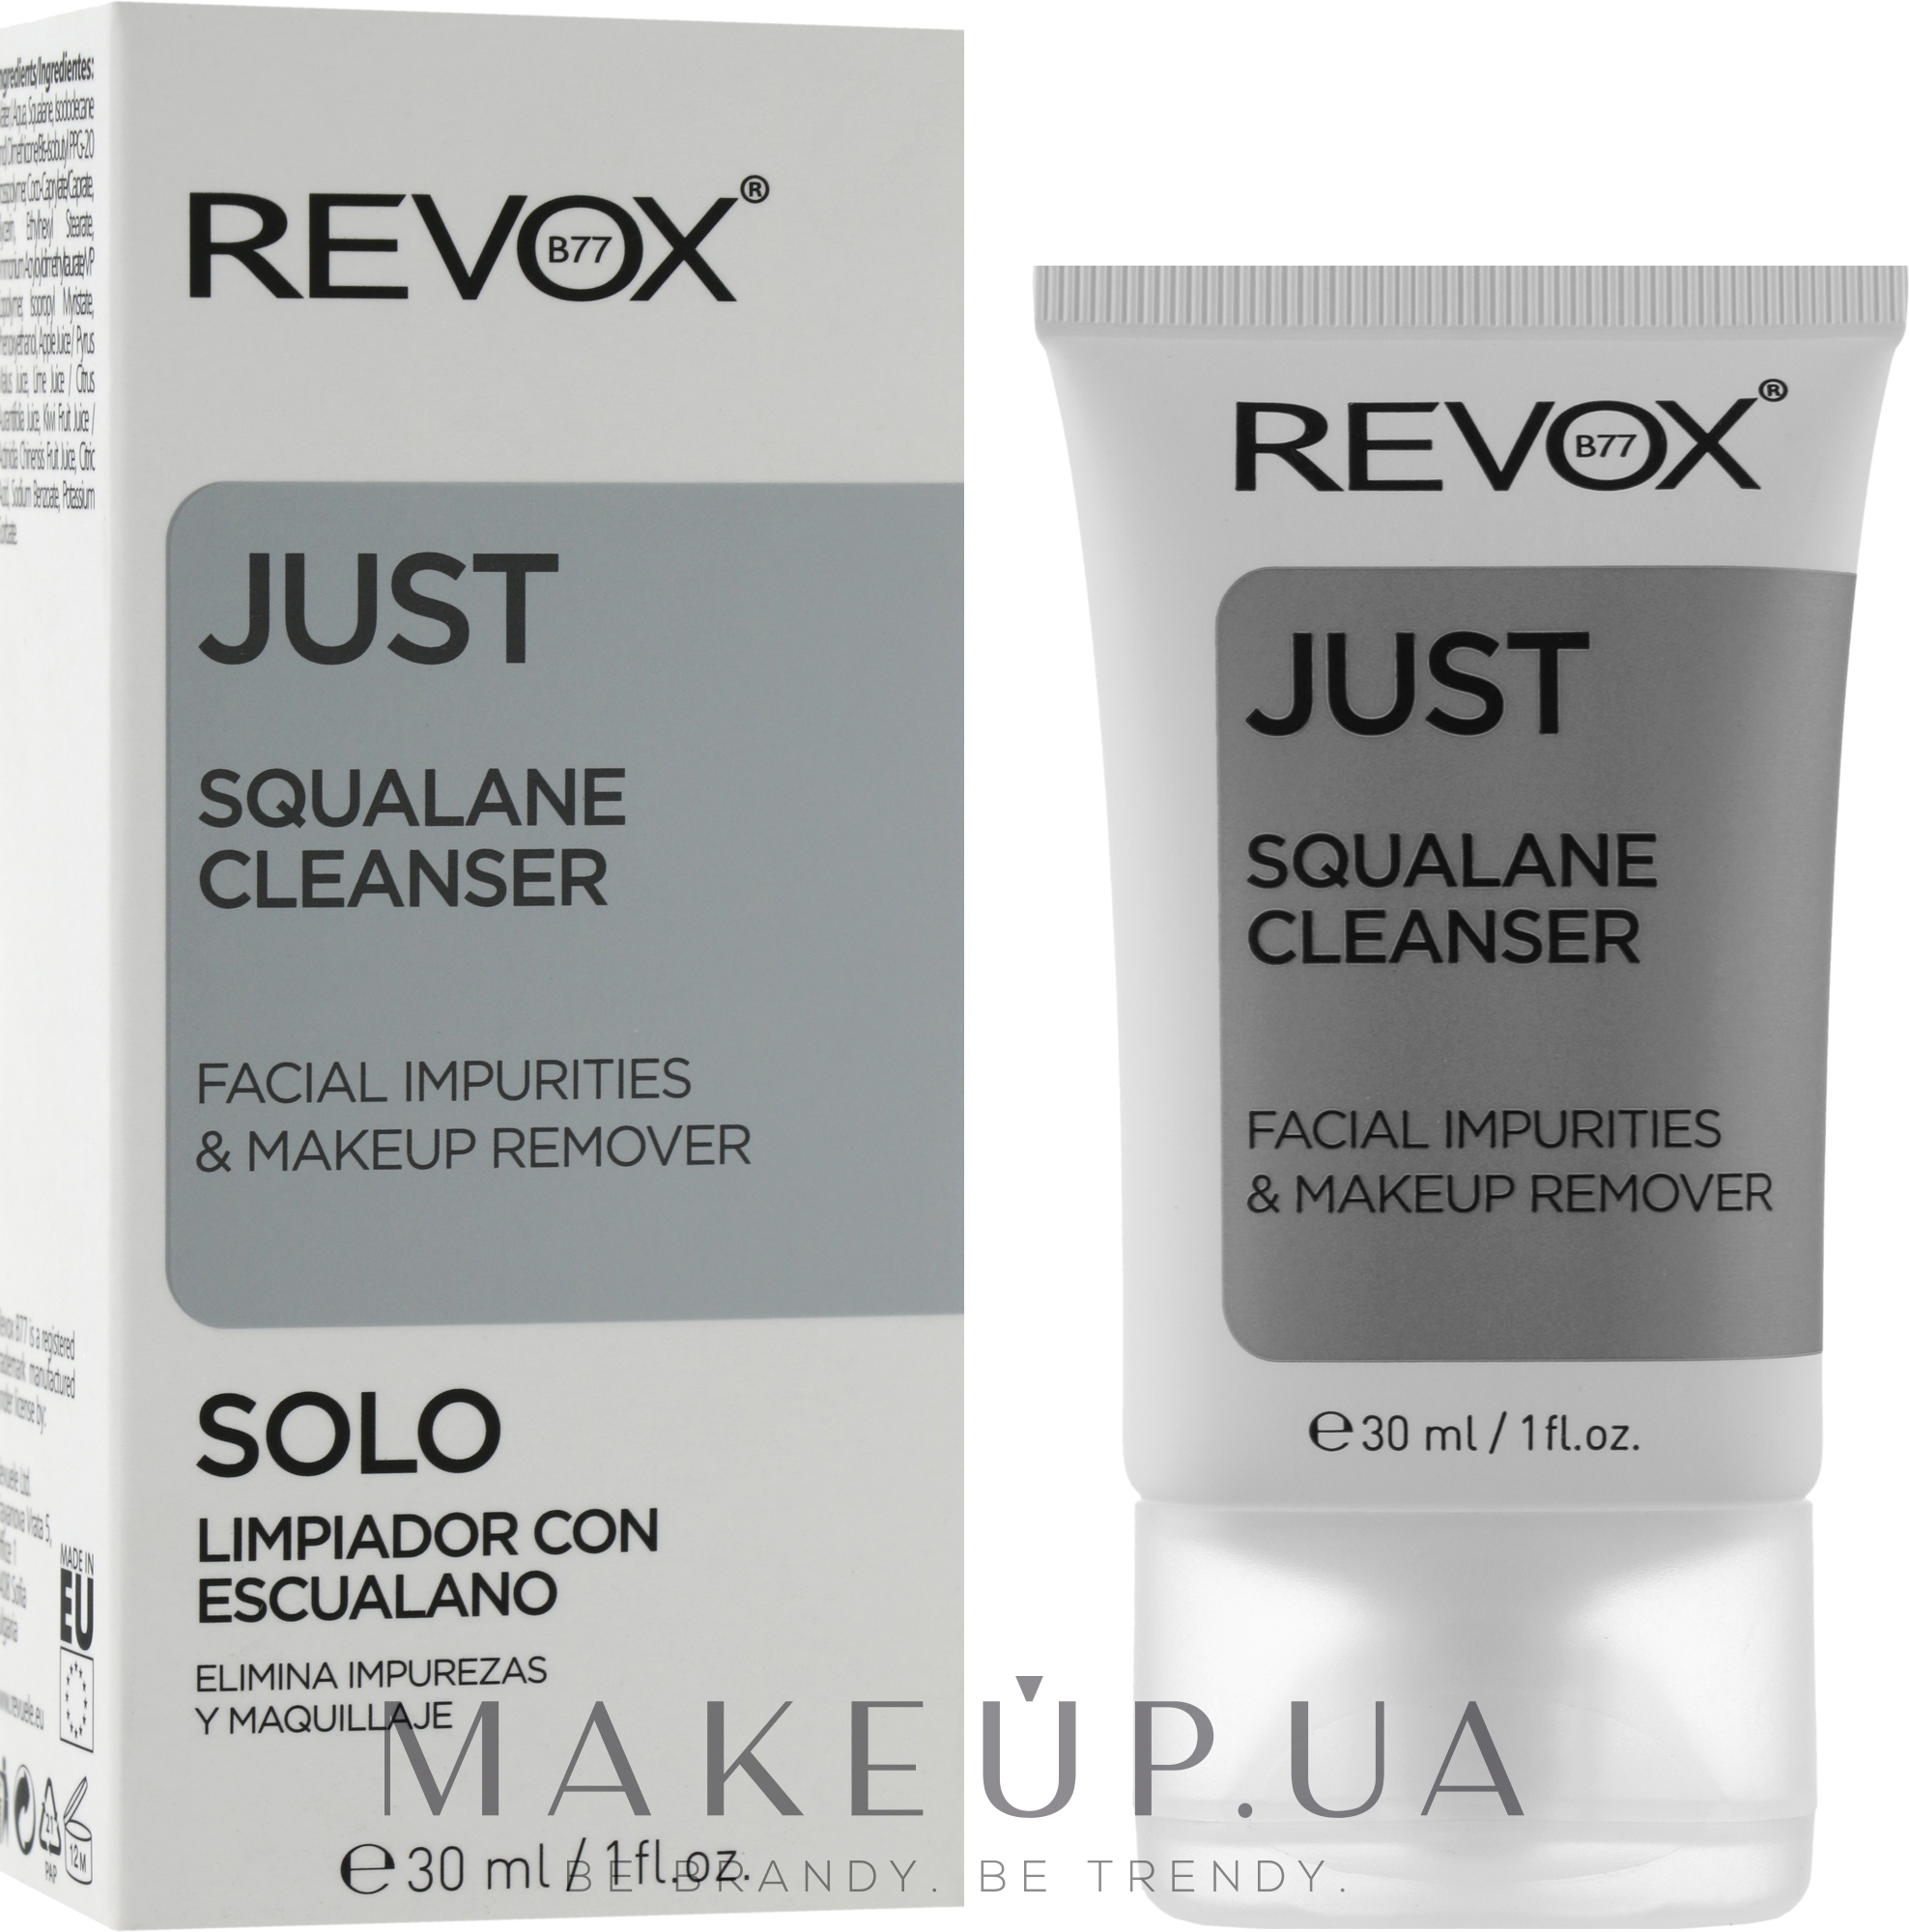 Зволожуюча емульсія зі скваланом для очищення та демакіяжу обличчя - Revox B77 Just Squalane Cleanser - Facial Impurities & Makeup Remover — фото 30ml